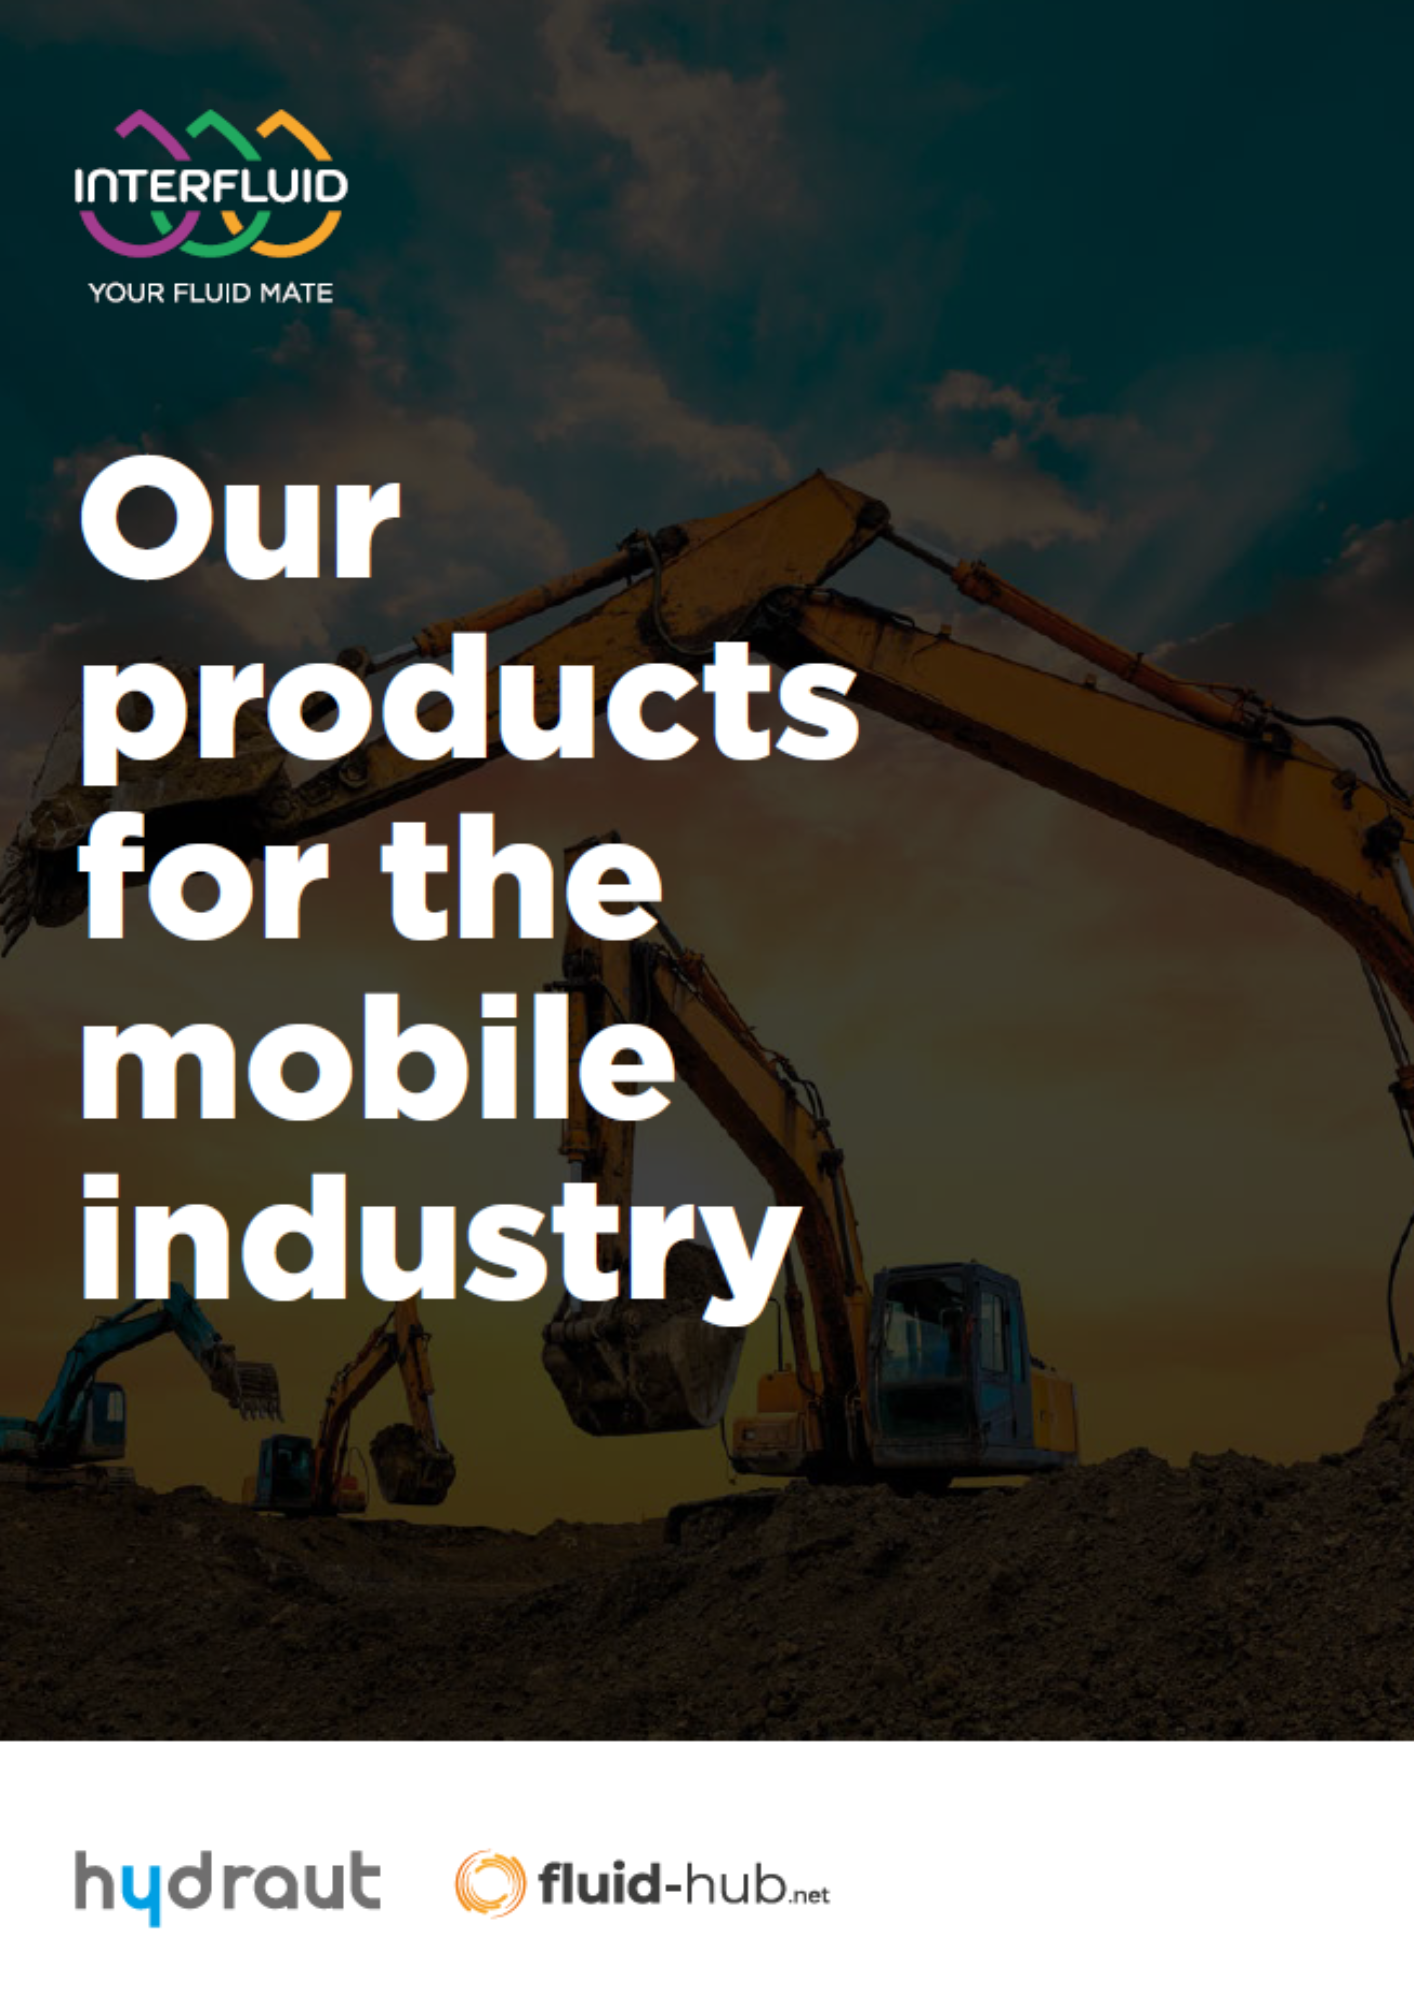 I nostri prodotti per il settore mobile